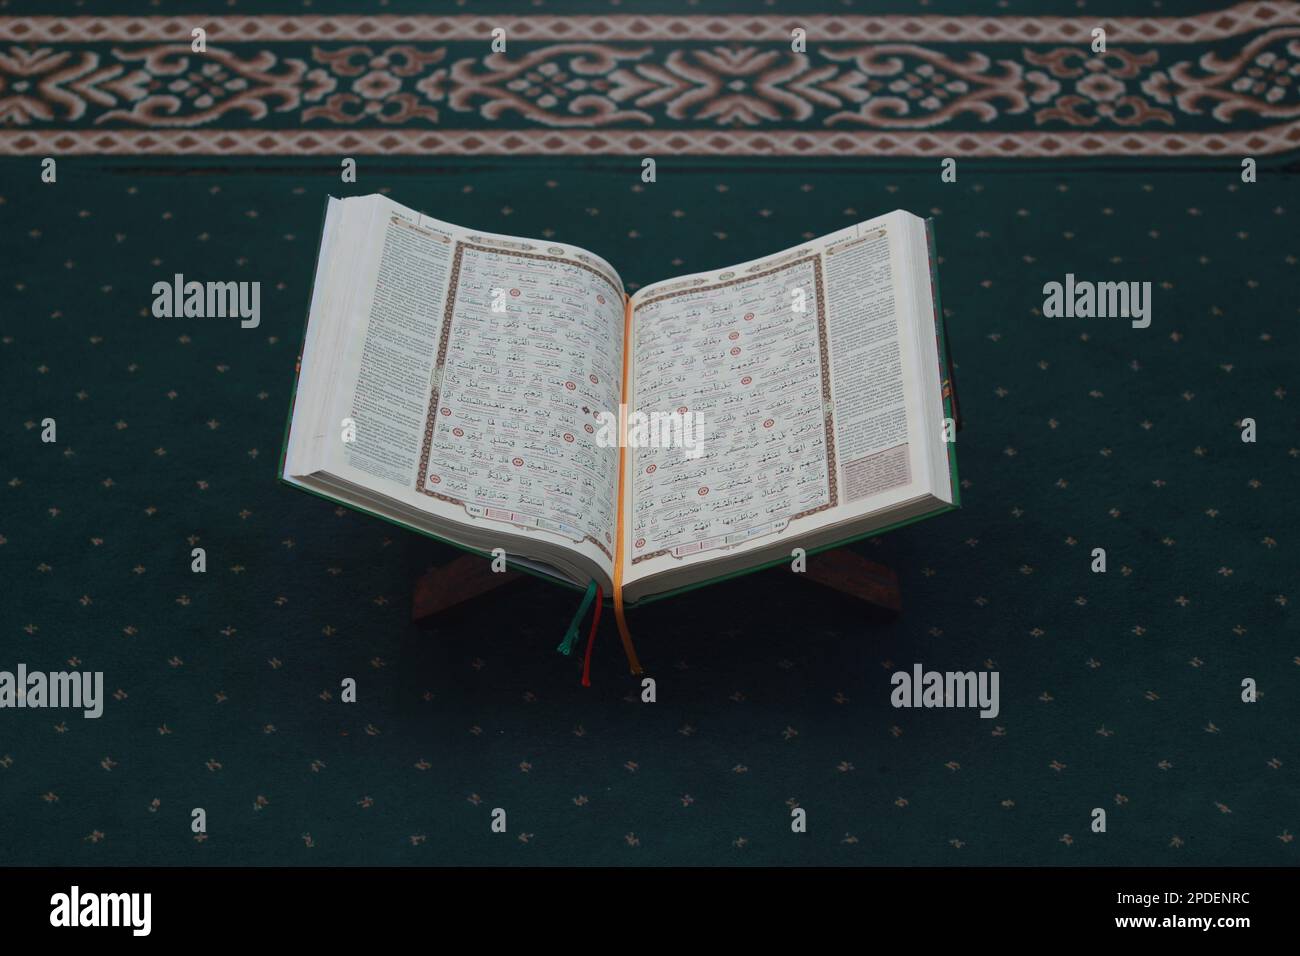 Un gros plan du livre Saint Al-Coran sur un tapis de prière vert. Concept de photo islamique. Banque D'Images